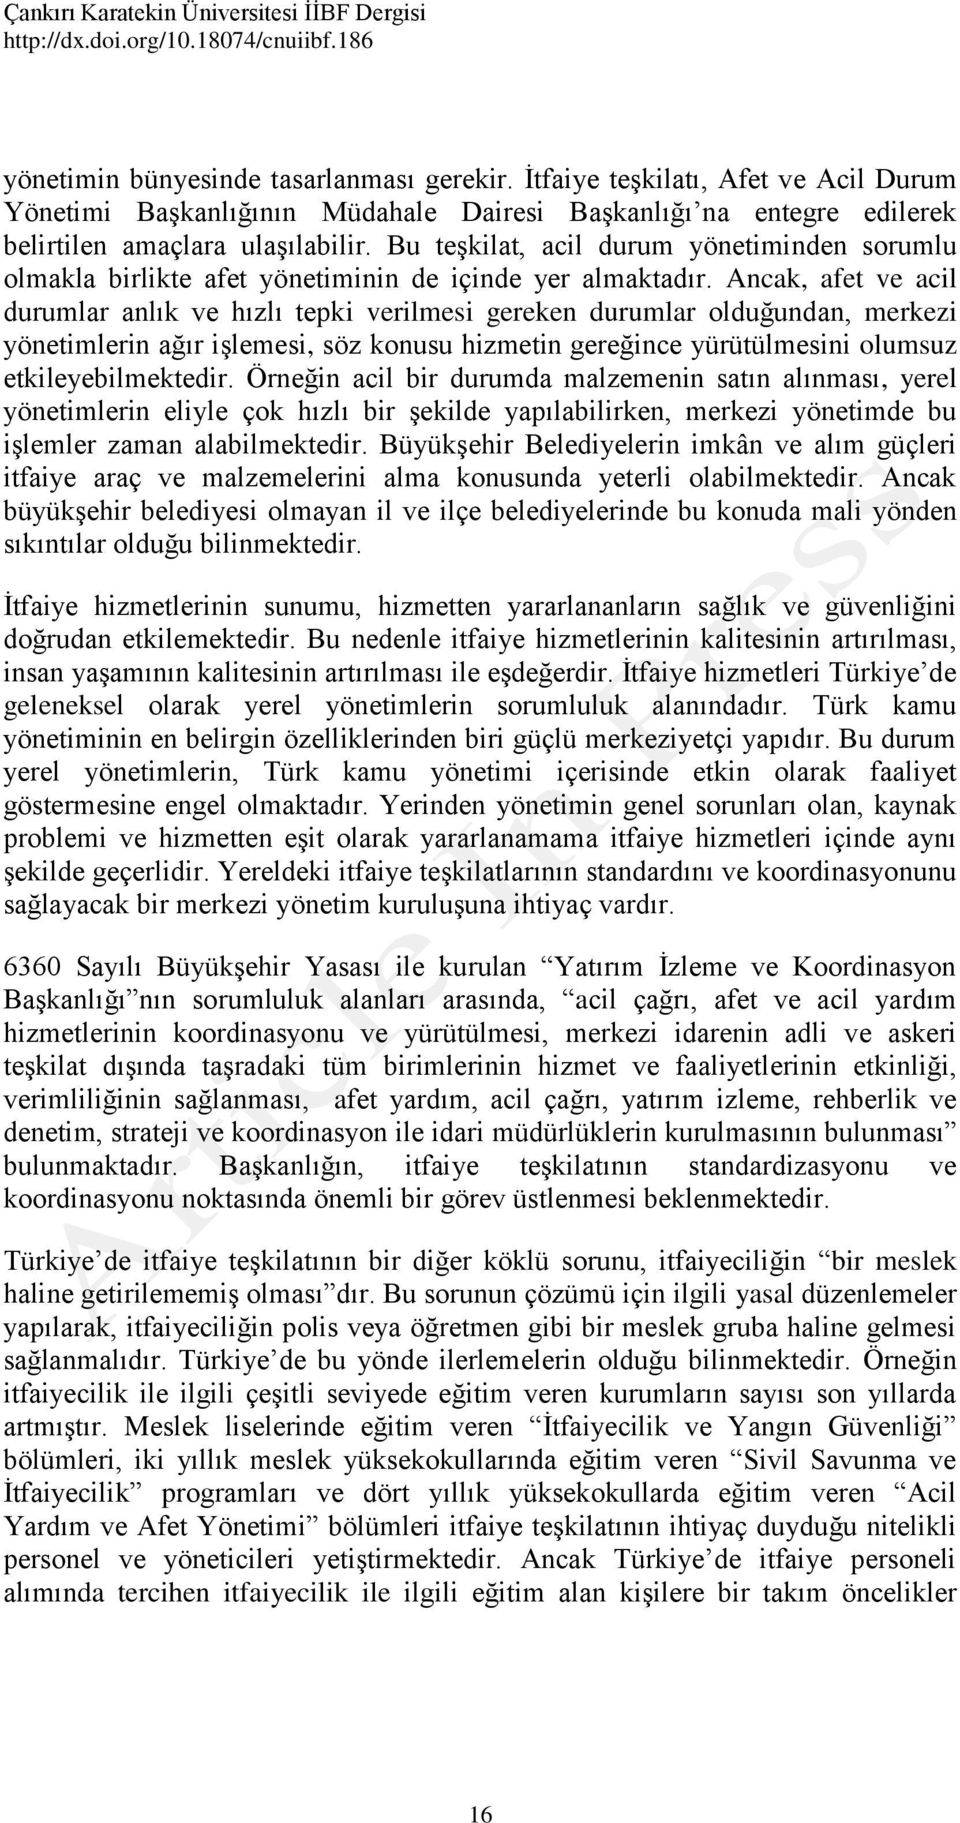 Osmanli Kahramanlari Tulumbacilar Fikriyat Gazetesi